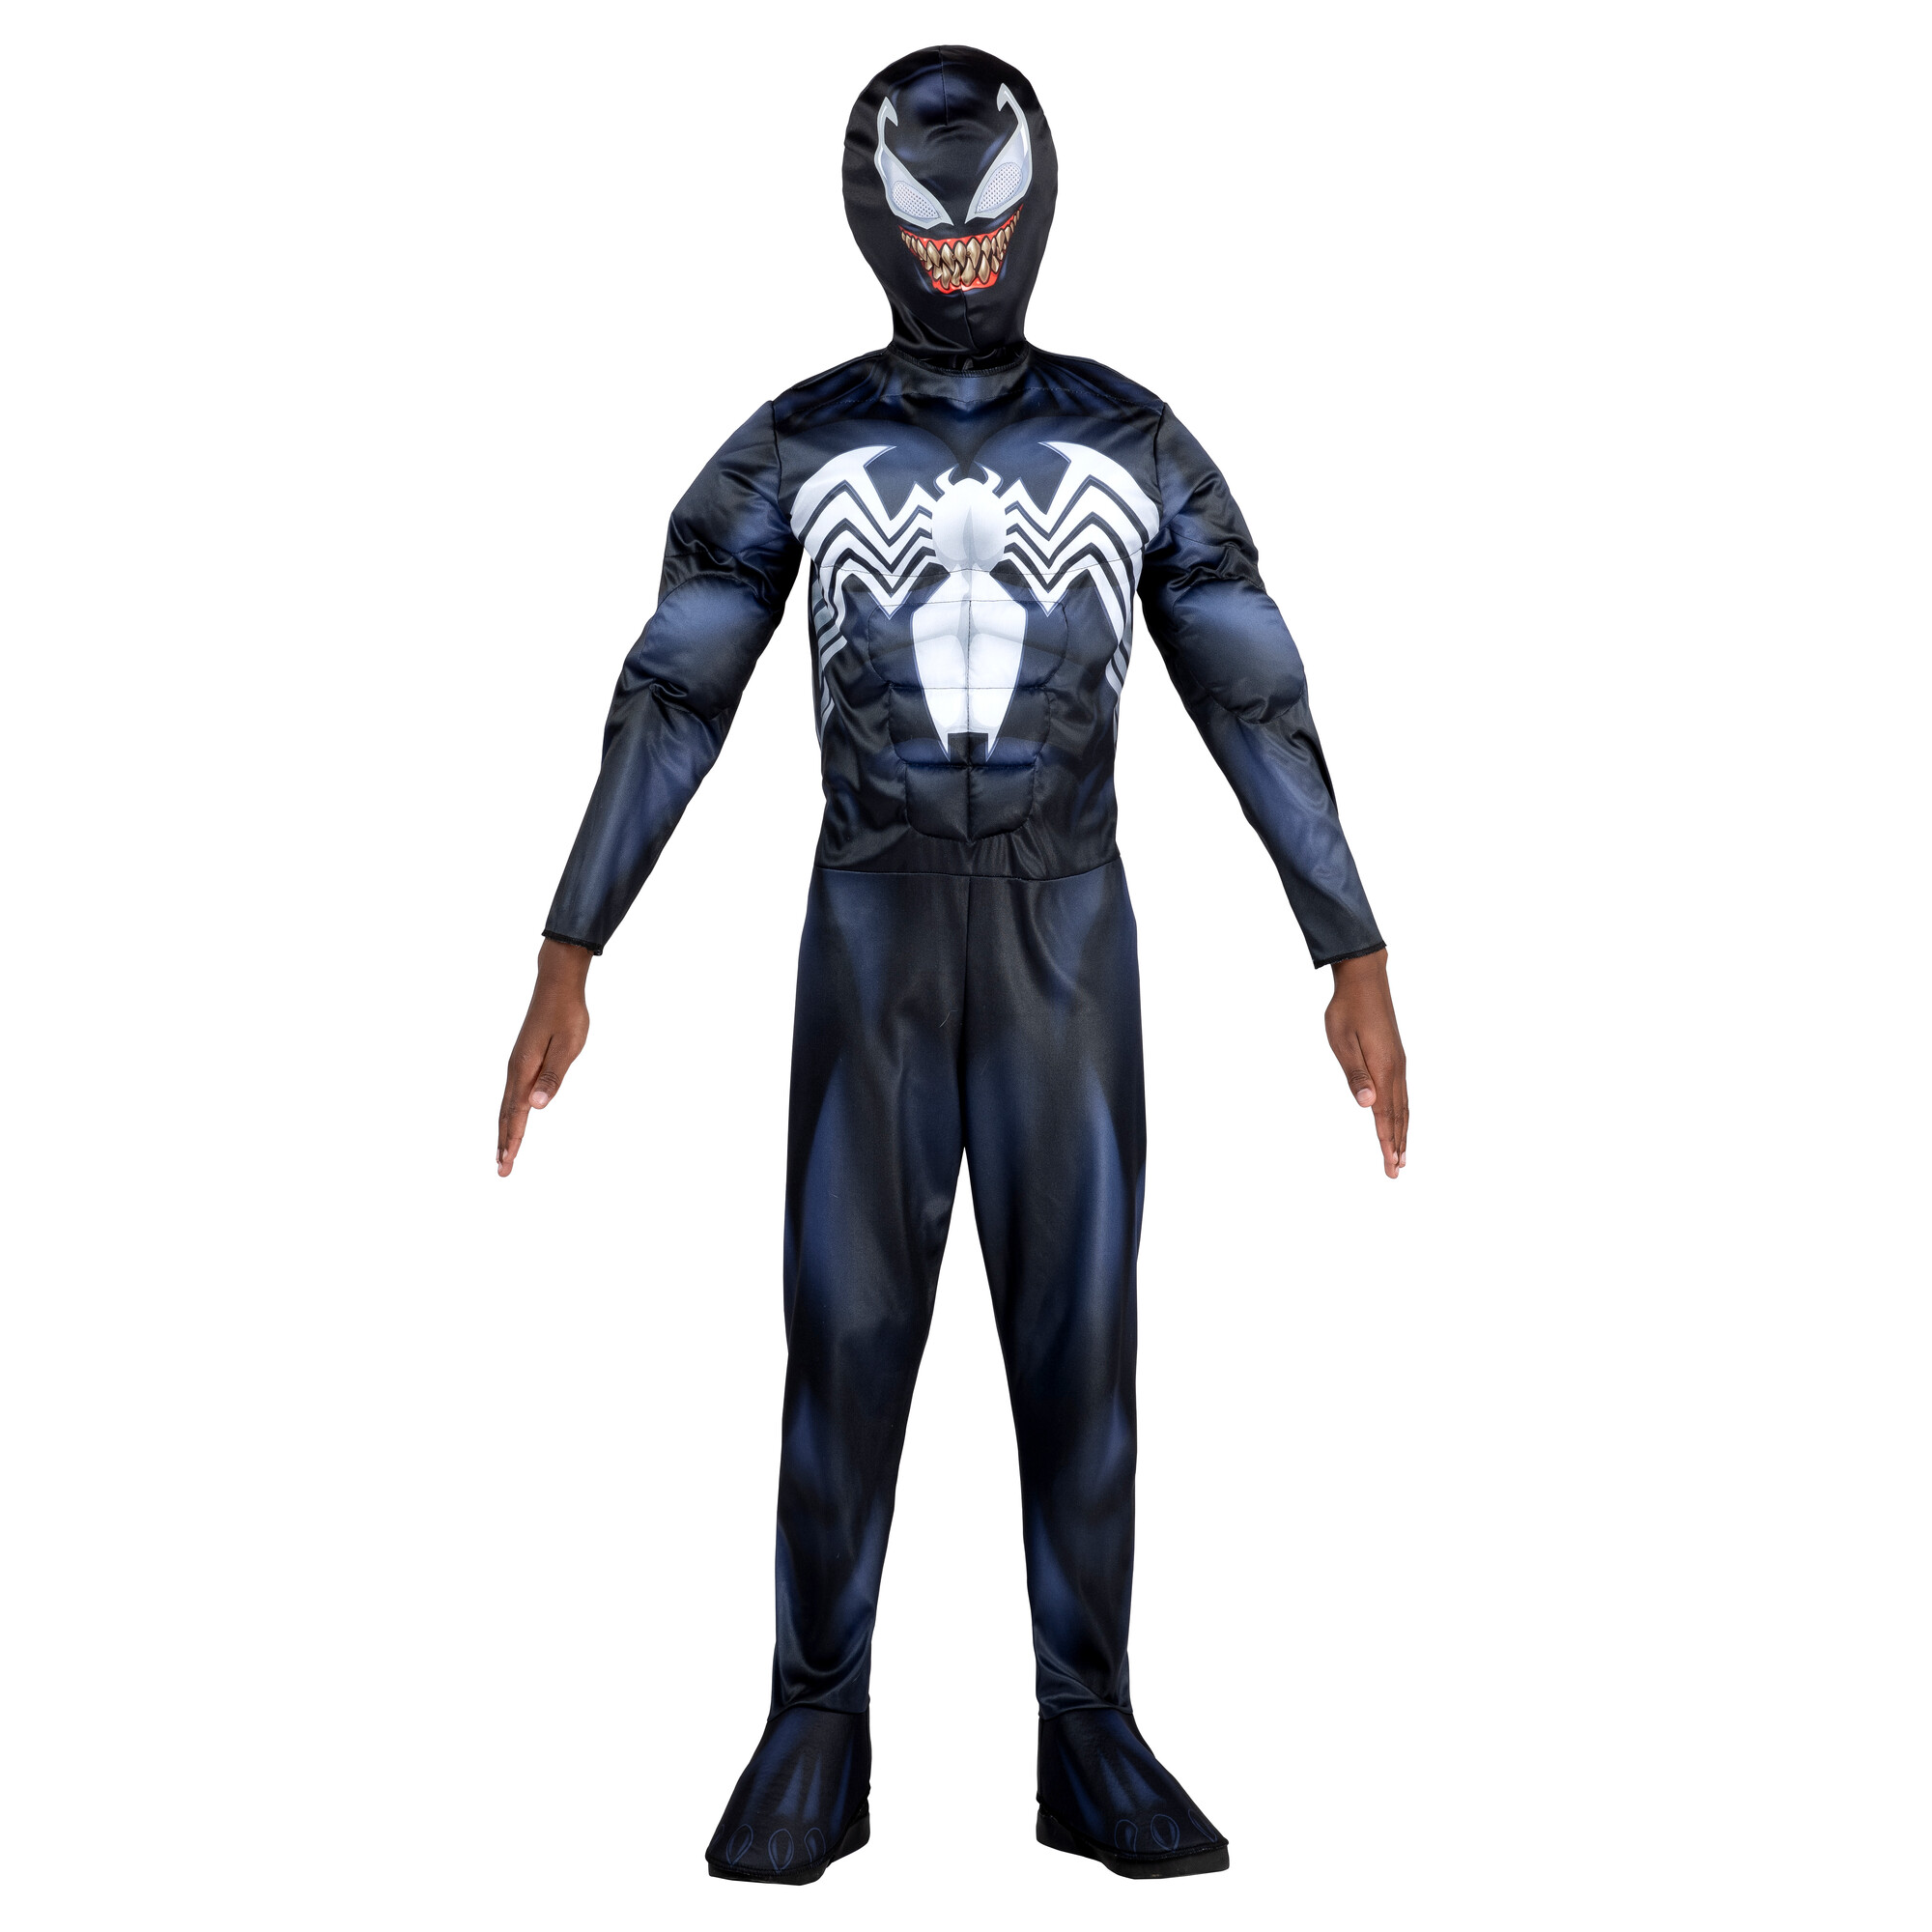 Kids Venom Boys Muscle Chest Villain Qualux Costume, $38.99